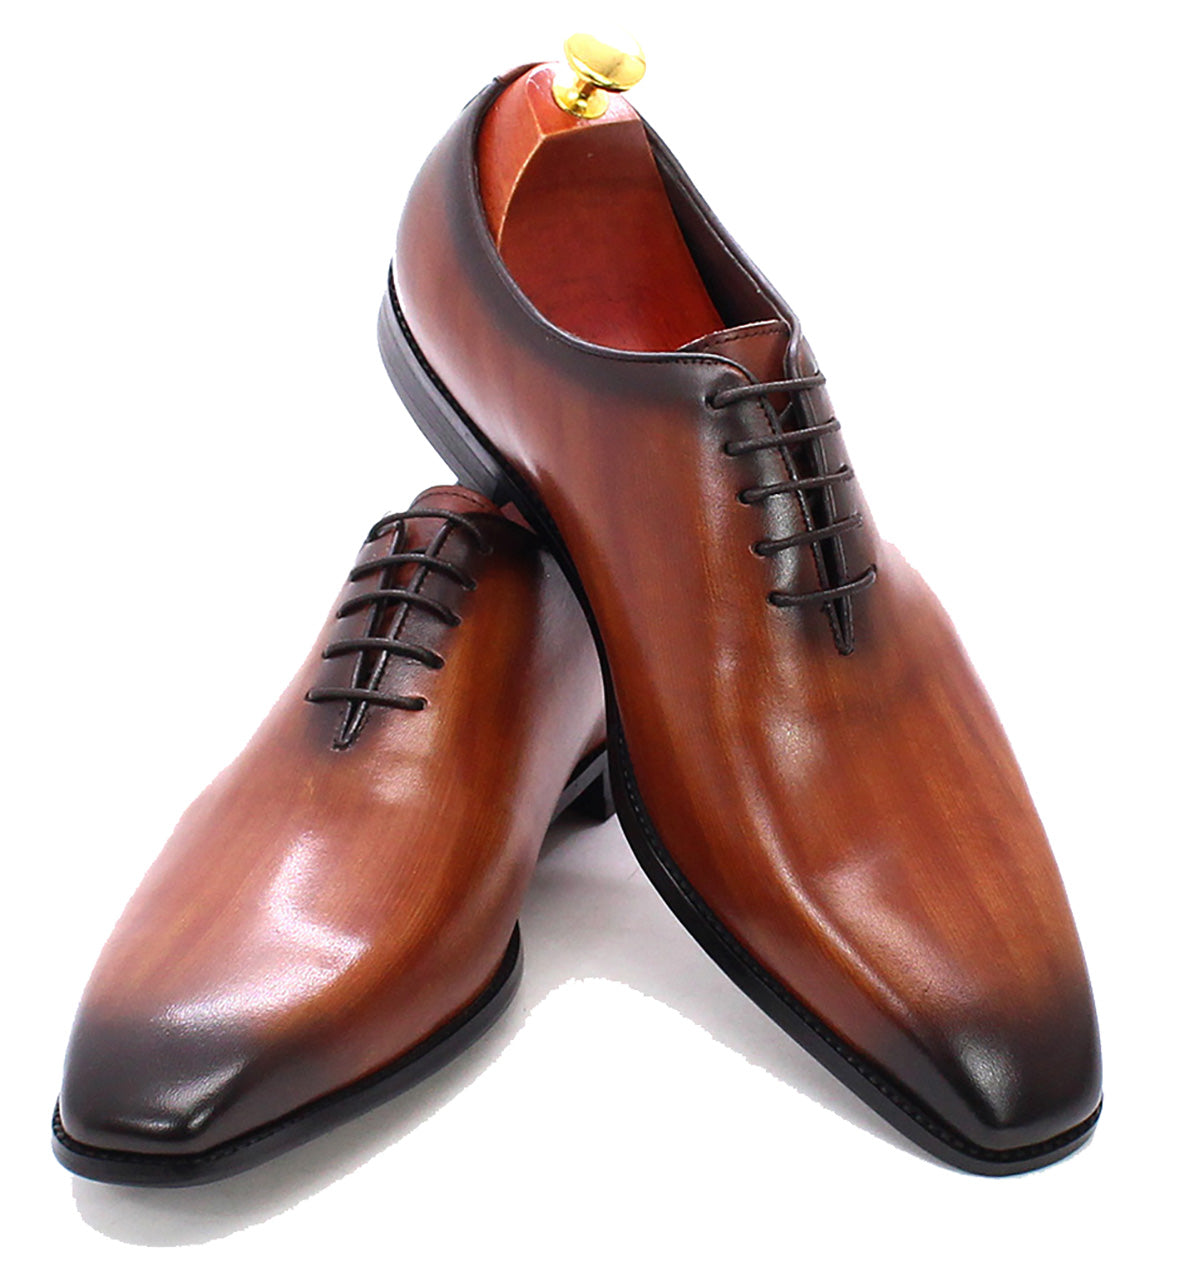 Men's Dress Formal Whole Cut Oxfords Shoes